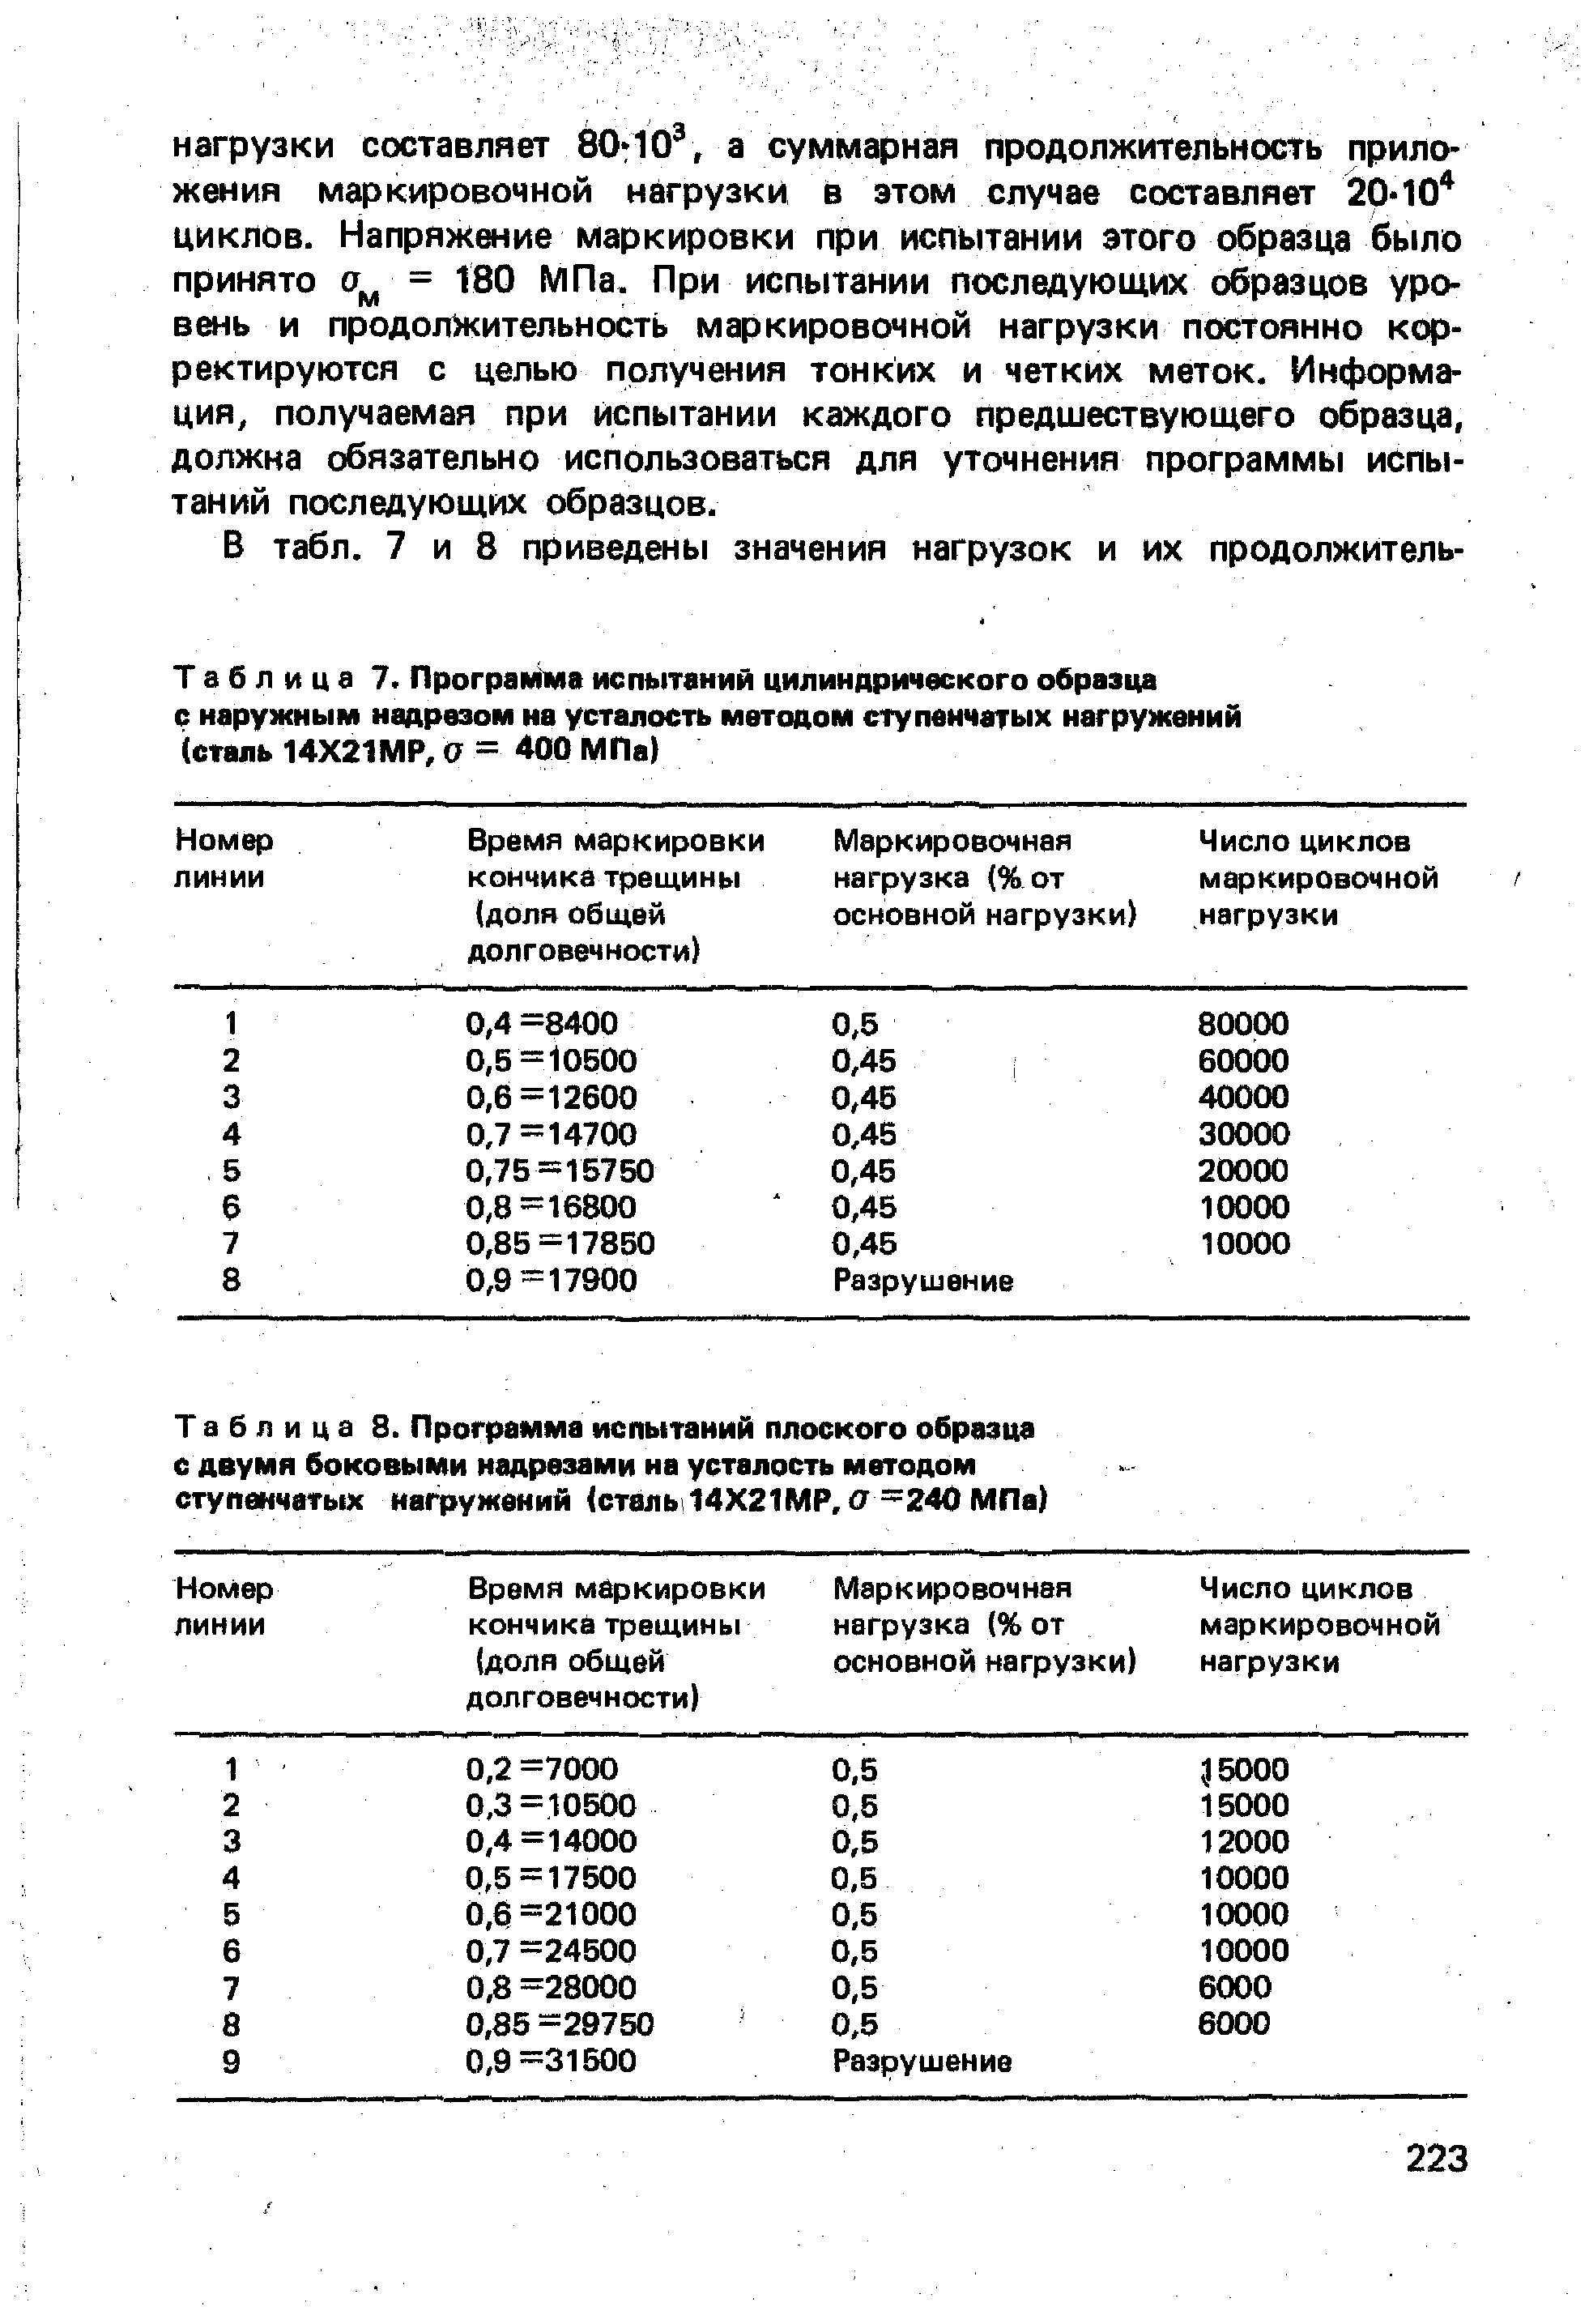 Таблица 7. Программа <a href="/info/621207">испытаний цилиндрического образца</a> с наружным надрезом на усталость методом ступенчатых нагружений (сталь 14Х21МР, О = 400 МПа)
